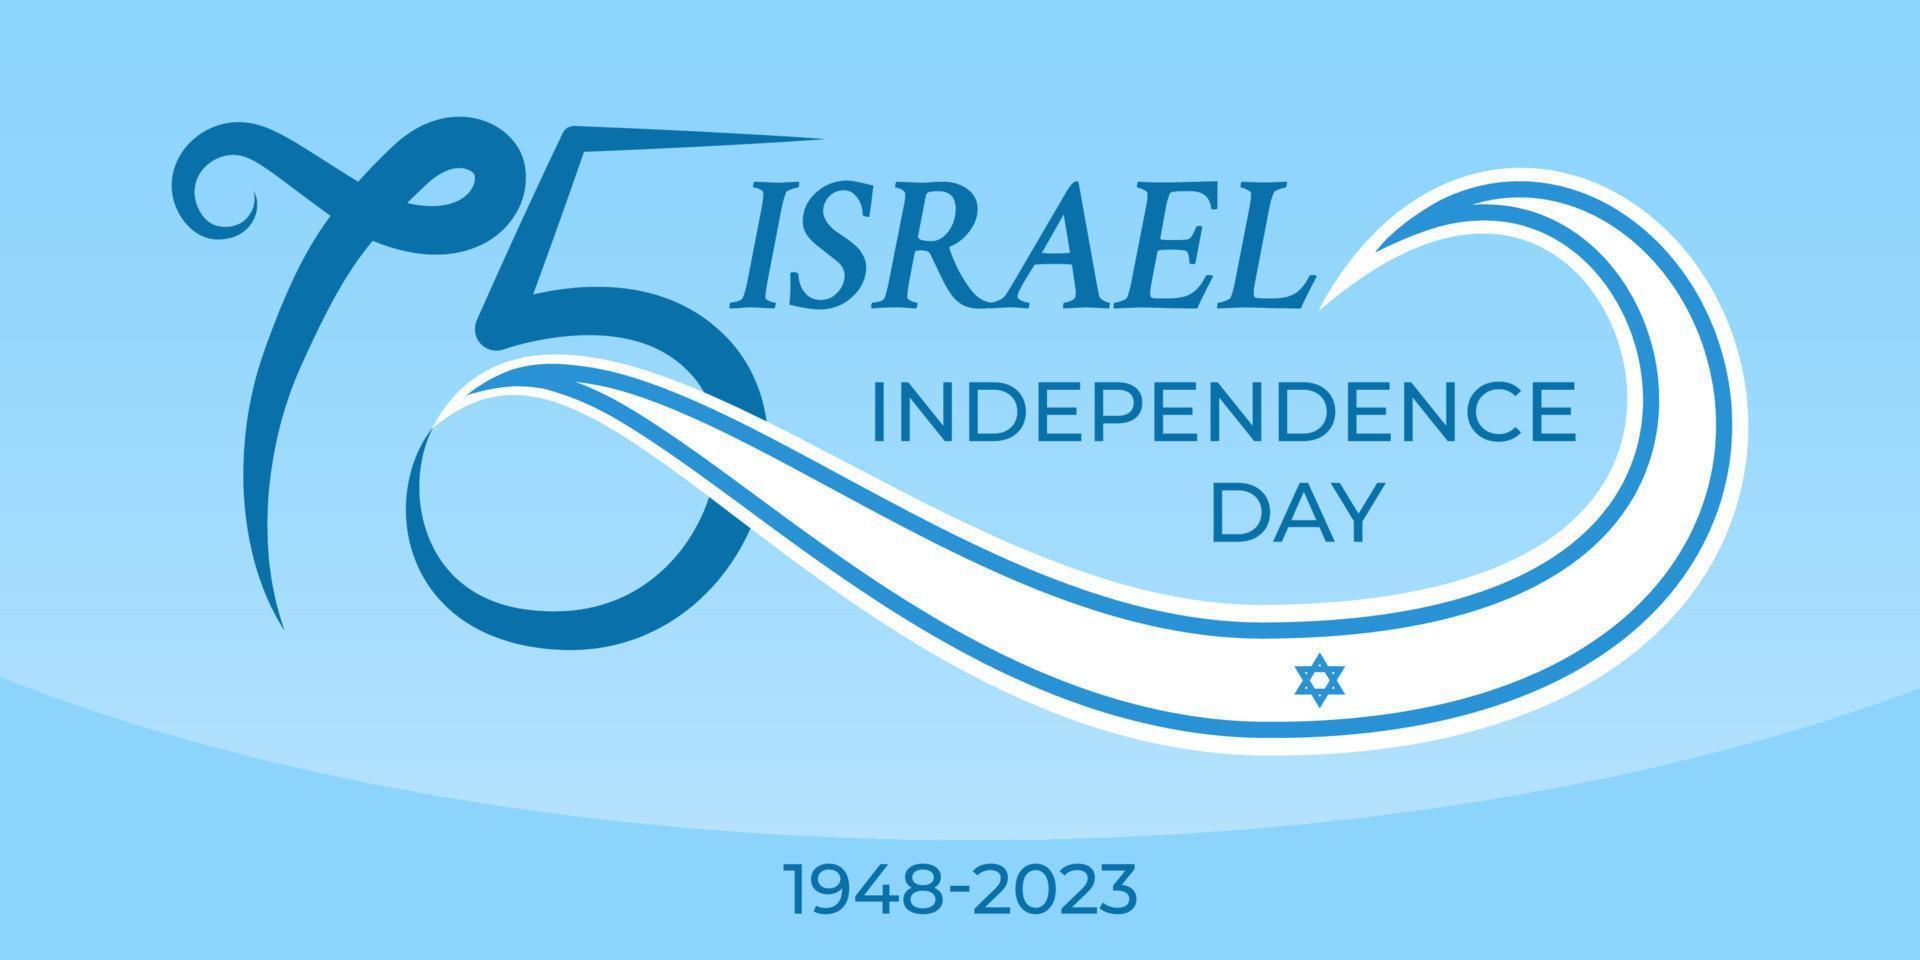 75 años aniversario Israel independencia día. saludo bandera con número 75 y el israelí bandera. genial para logo, tarjeta, sitio web, imprimir, diseño, póster, social medios de comunicación. vector plano estilo ilustración